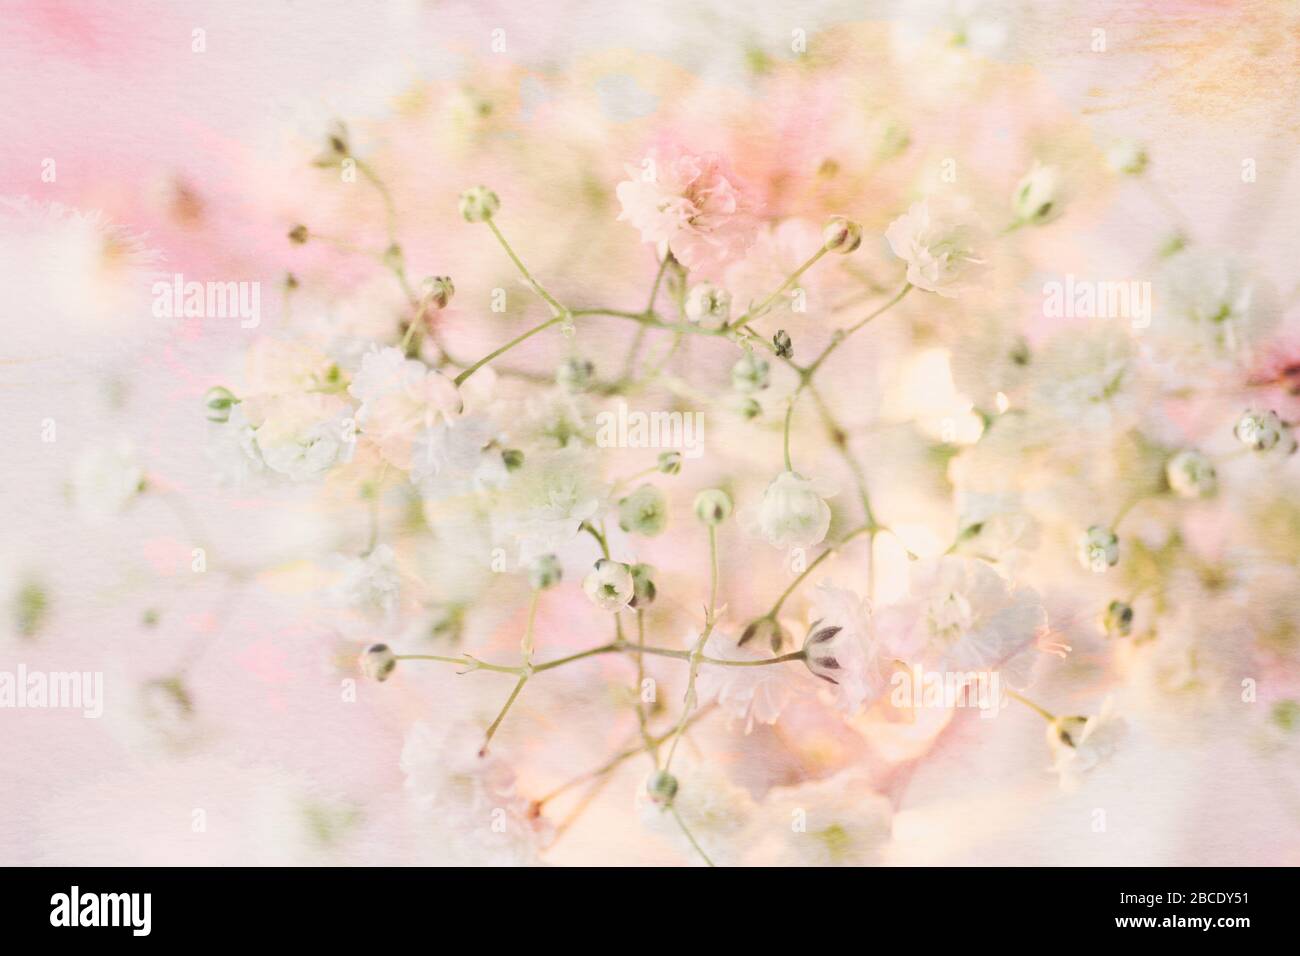 Weiches zartes Blumenbild von Gypsophilia, auch bekannt als Baby's Breathe - moderne Fotografie mit Stillleben und Blumenmuster mit strukturierter Überlagerung Stockfoto